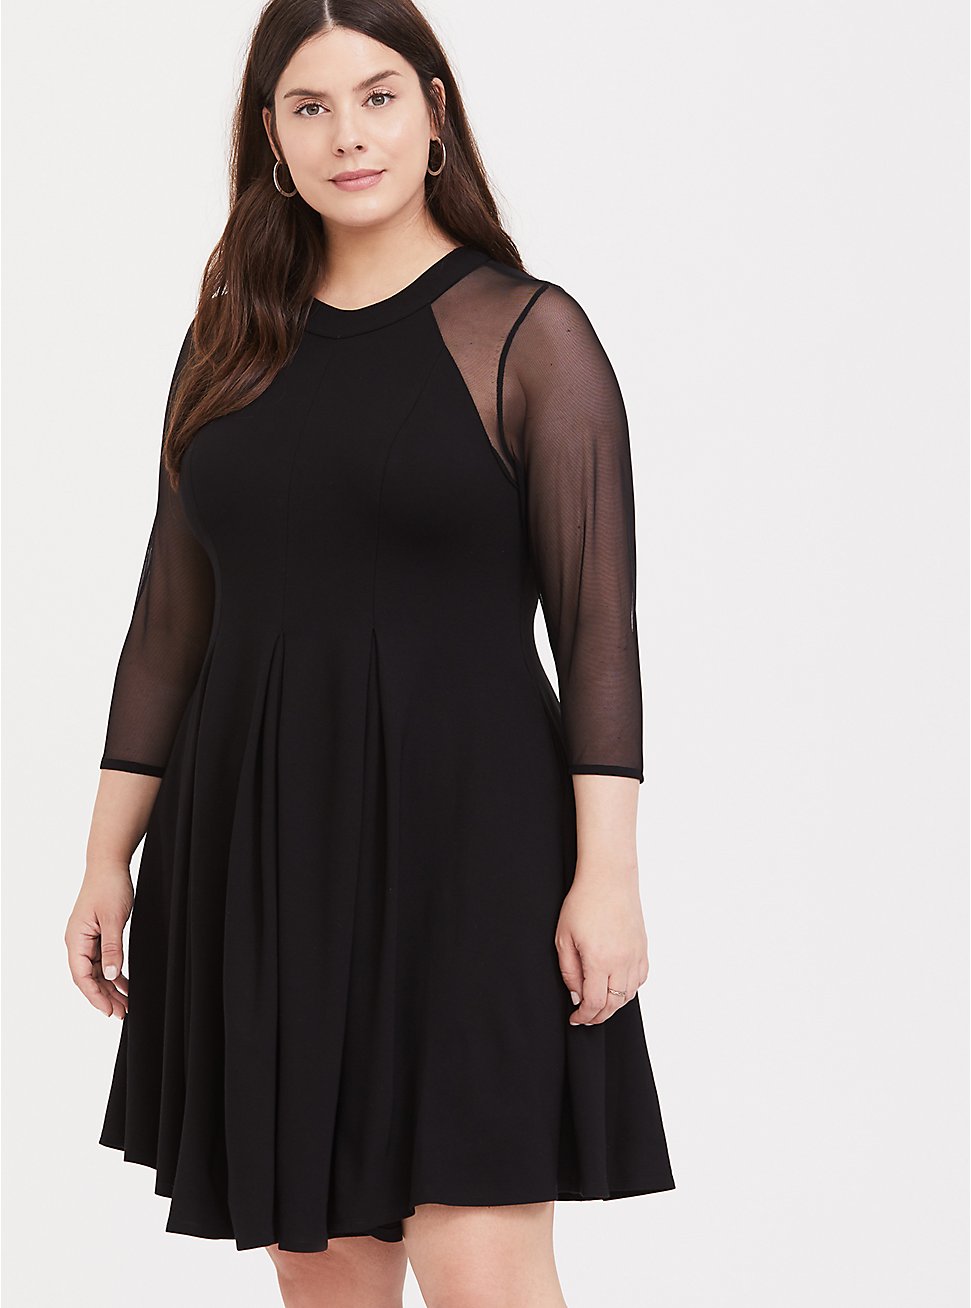 Plus Size - Black Premium Ponte & Mesh Fluted Dress - Torrid